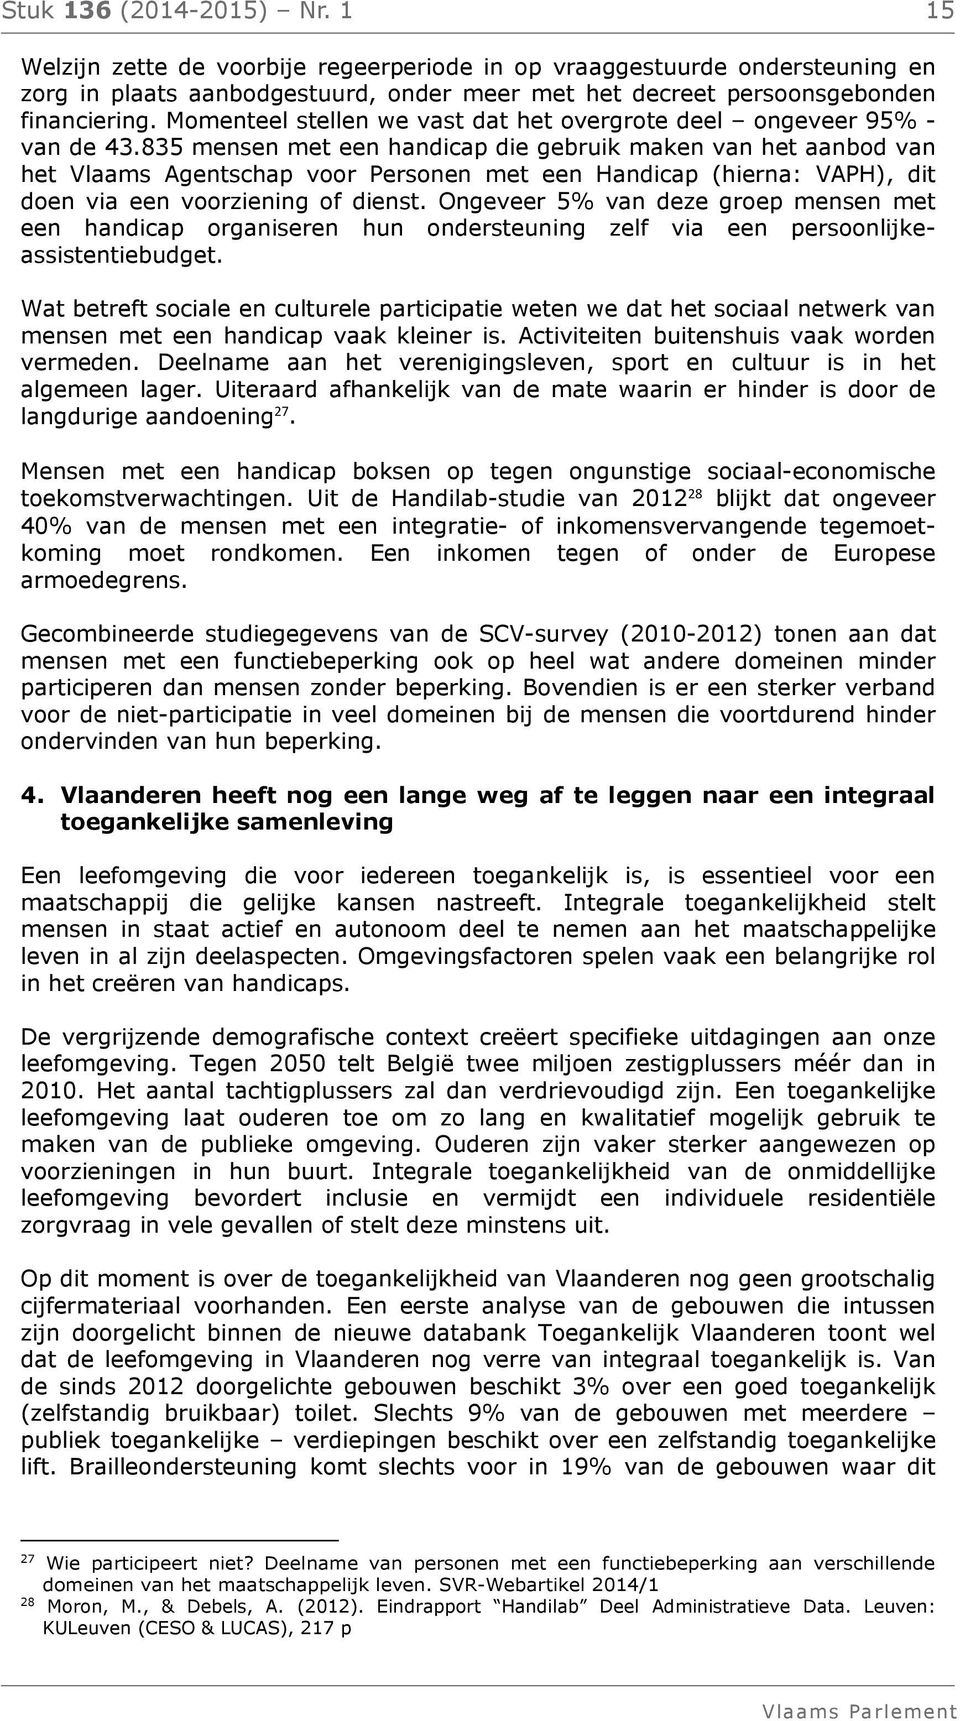 835 mensen met een handicap die gebruik maken van het aanbod van het Vlaams Agentschap voor Personen met een Handicap (hierna: VAPH), dit doen via een voorziening of dienst.